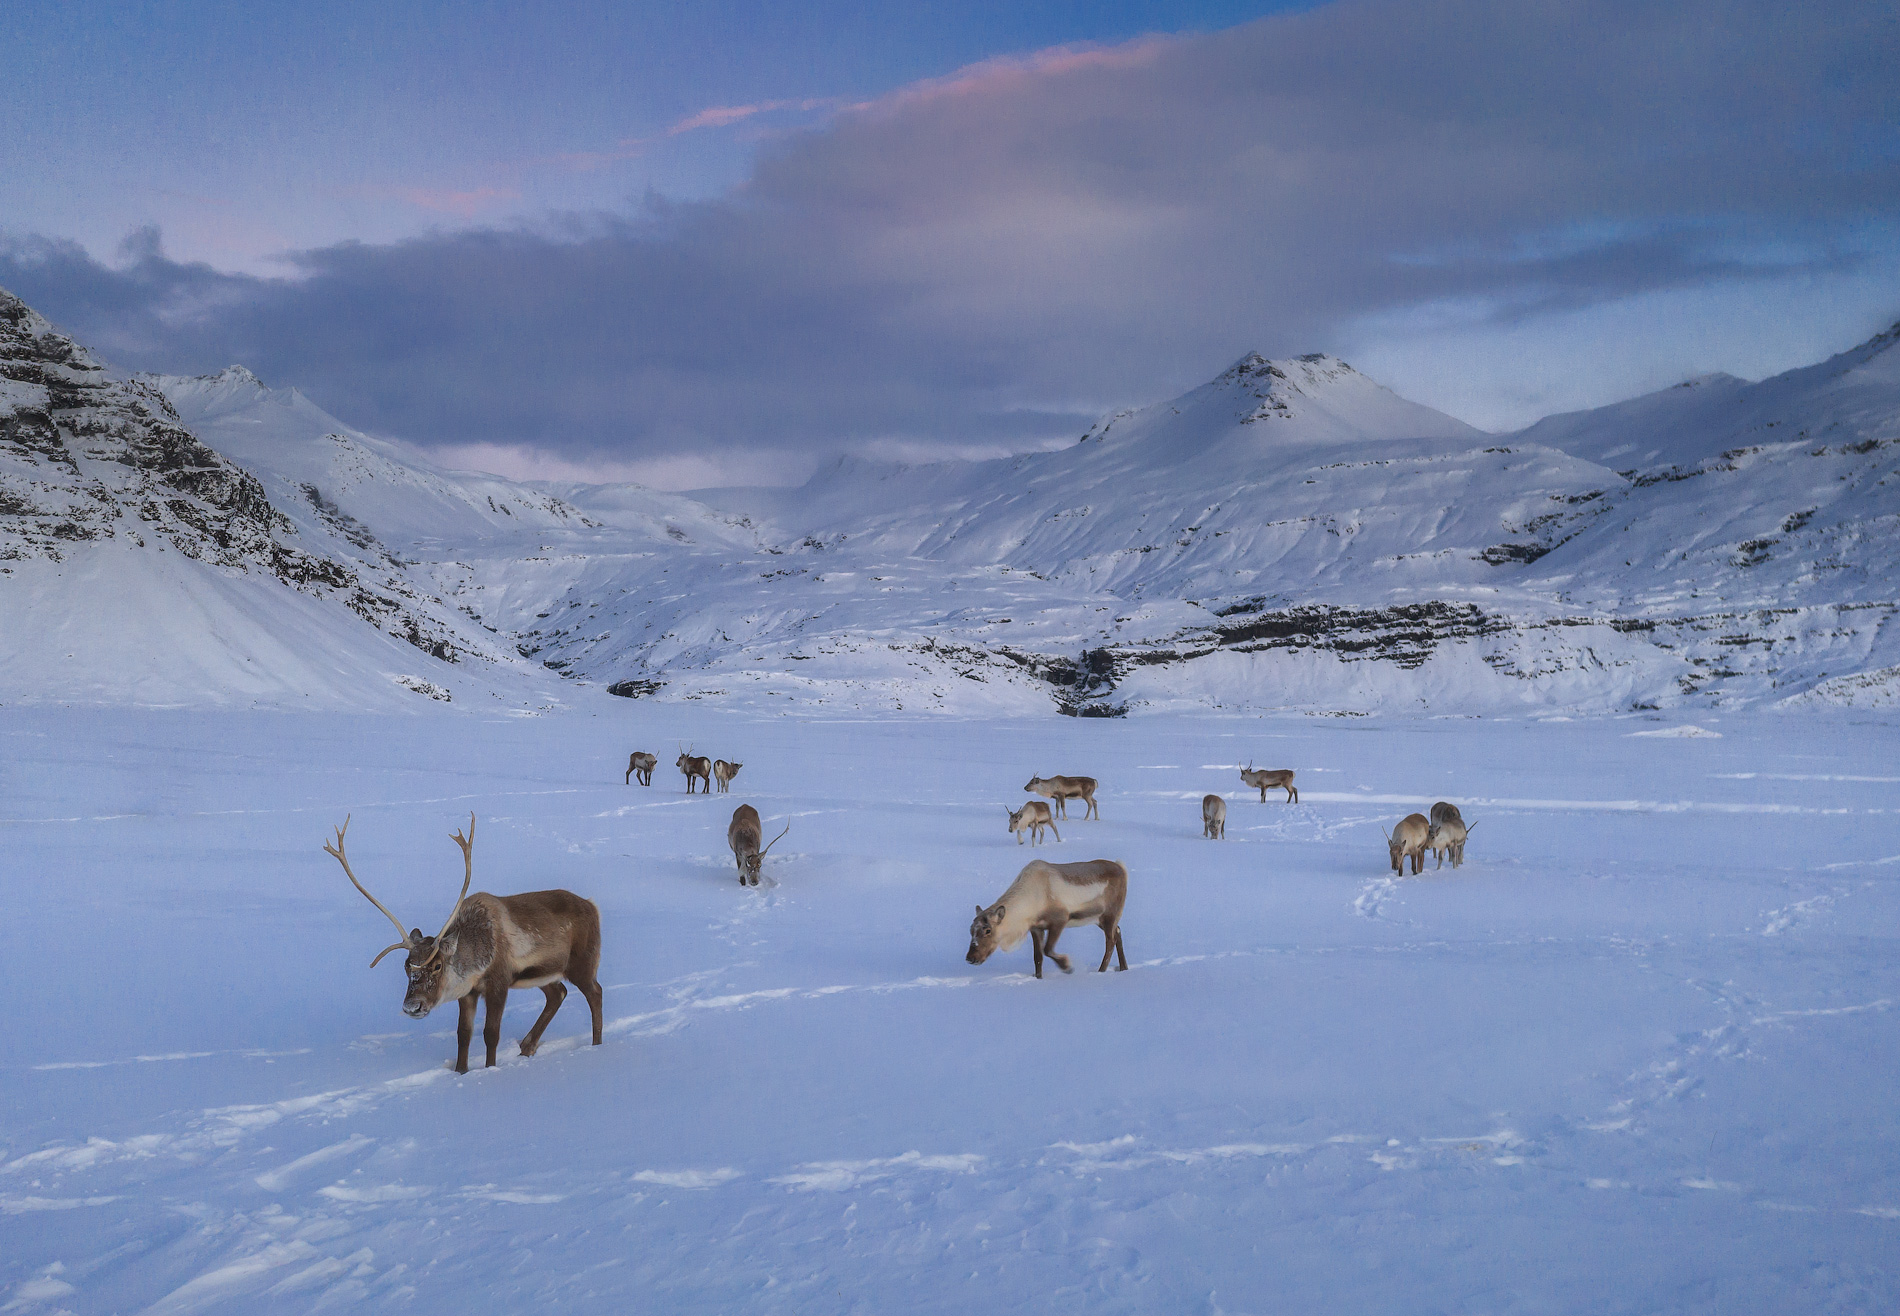 Se sei fortunato, potresti vedere delle renne nei fiordi orientali.